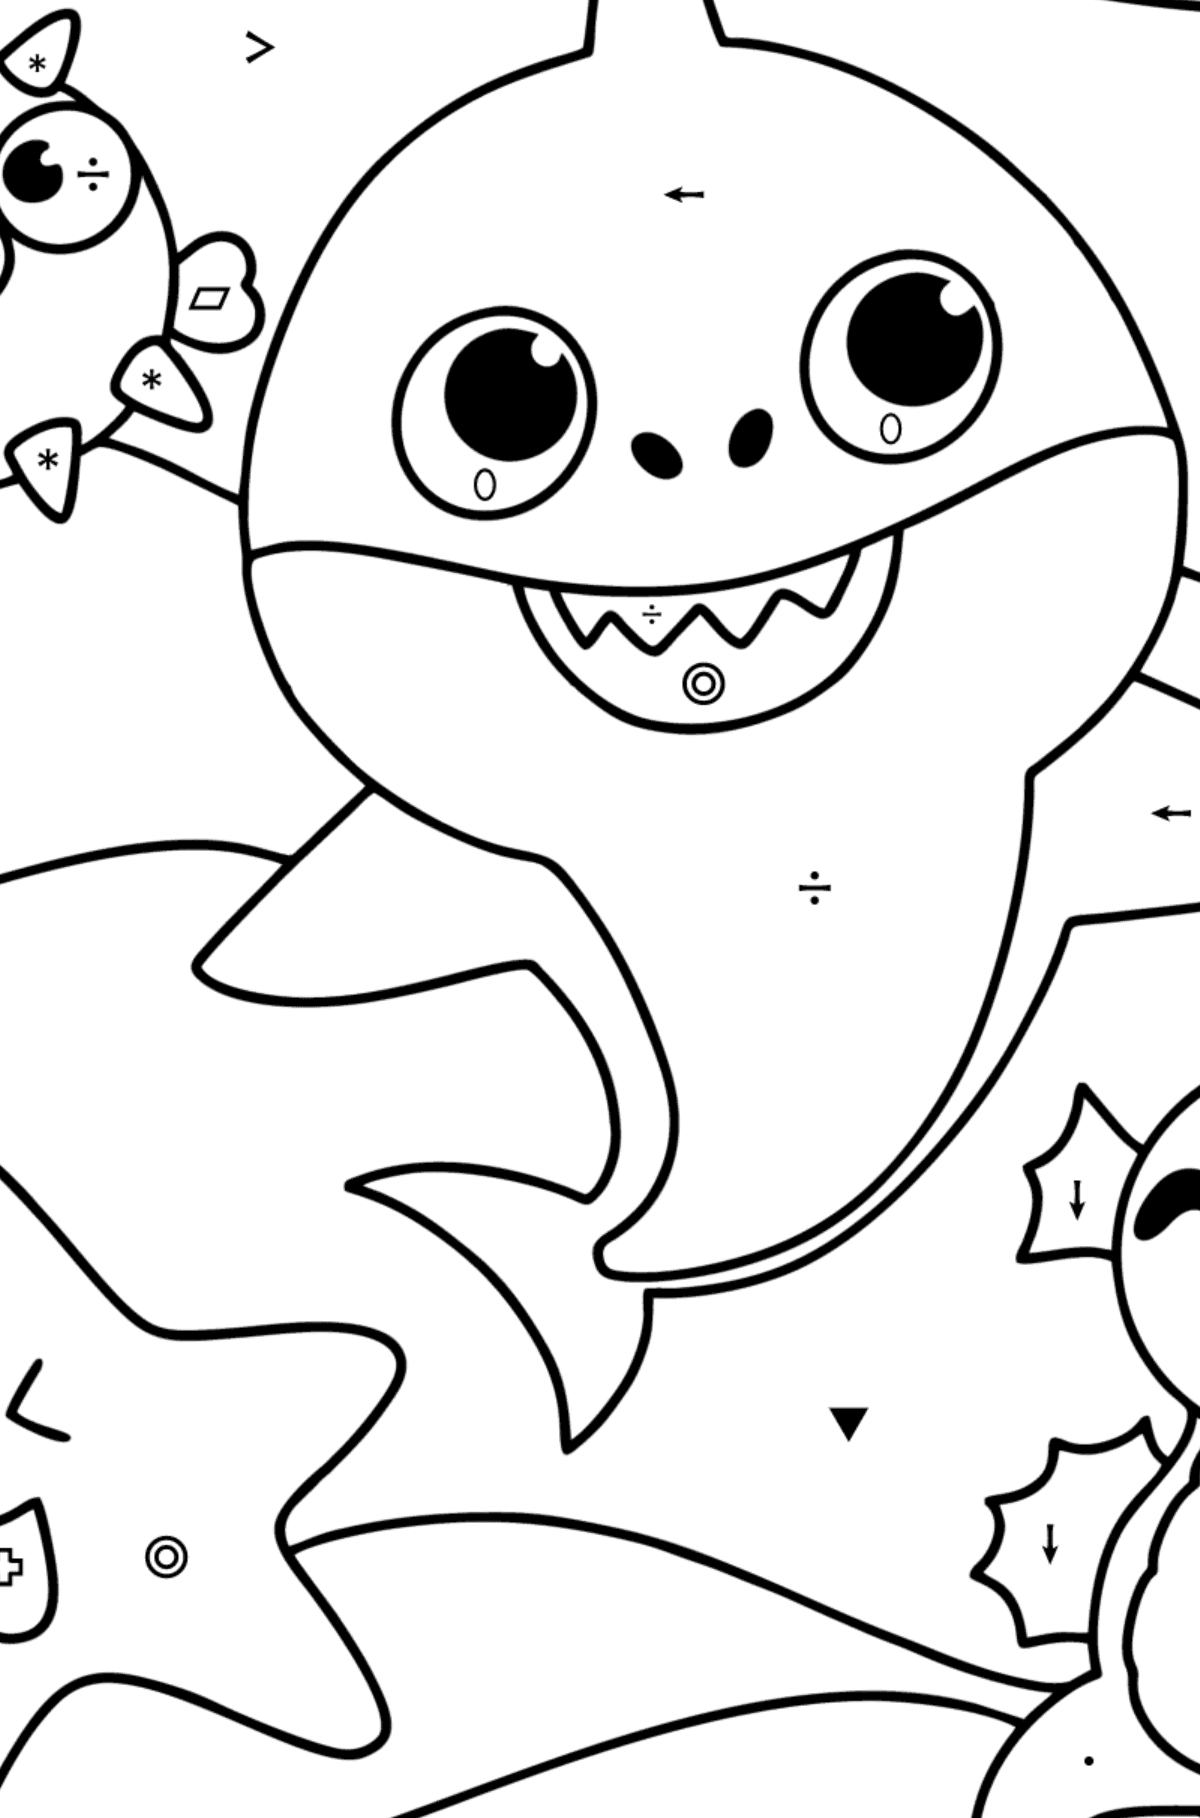 Venner Baby Shark tegning til fargelegging - Fargelegge etter symboler og geometriske former for barn